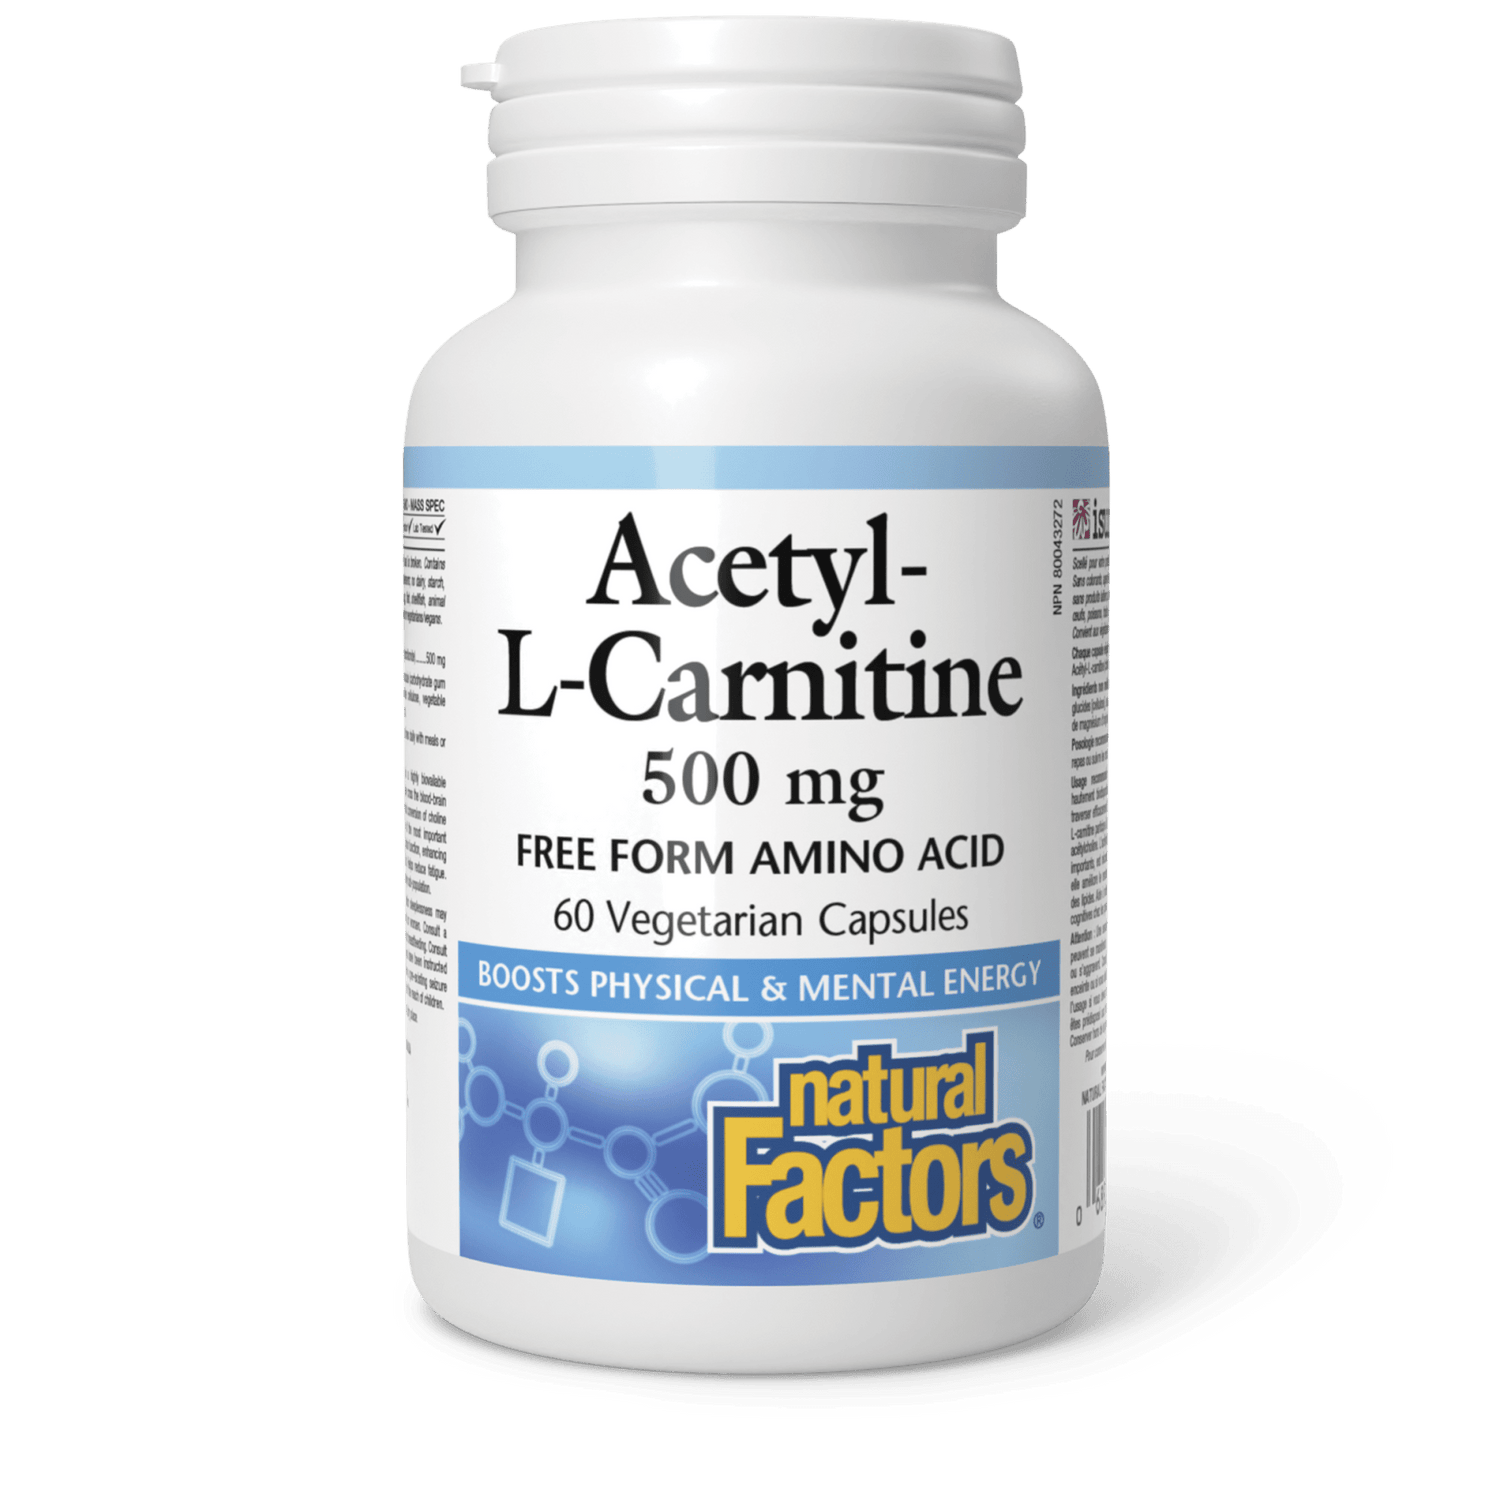 Acetyl-L-Carnitine 500 mg, Natural Factors|v|image|2800